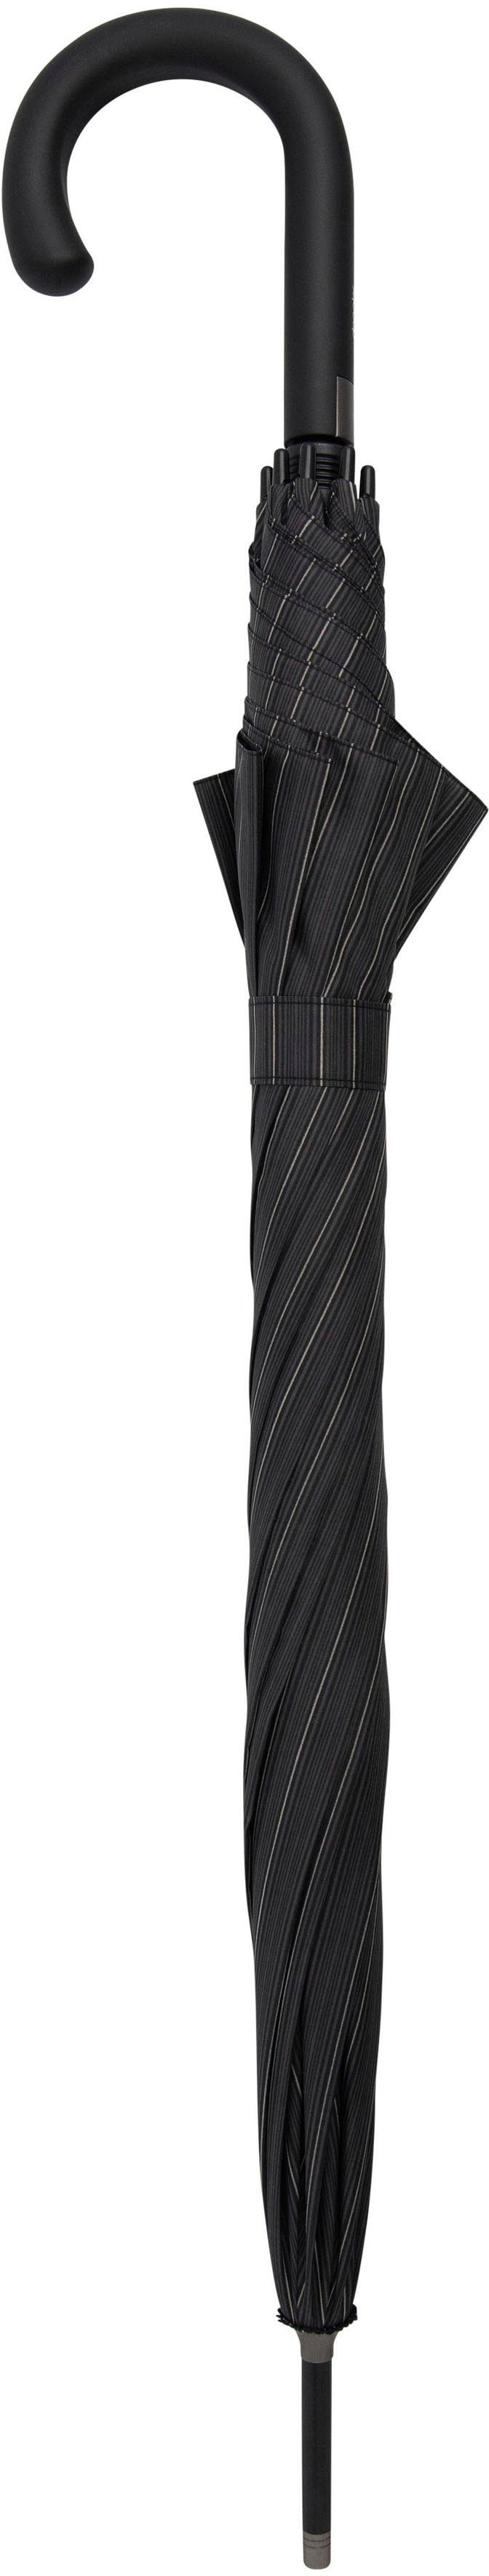 Langregenschirm classy Big stripe, AC Partnerschirm doppler® Flex Fiber